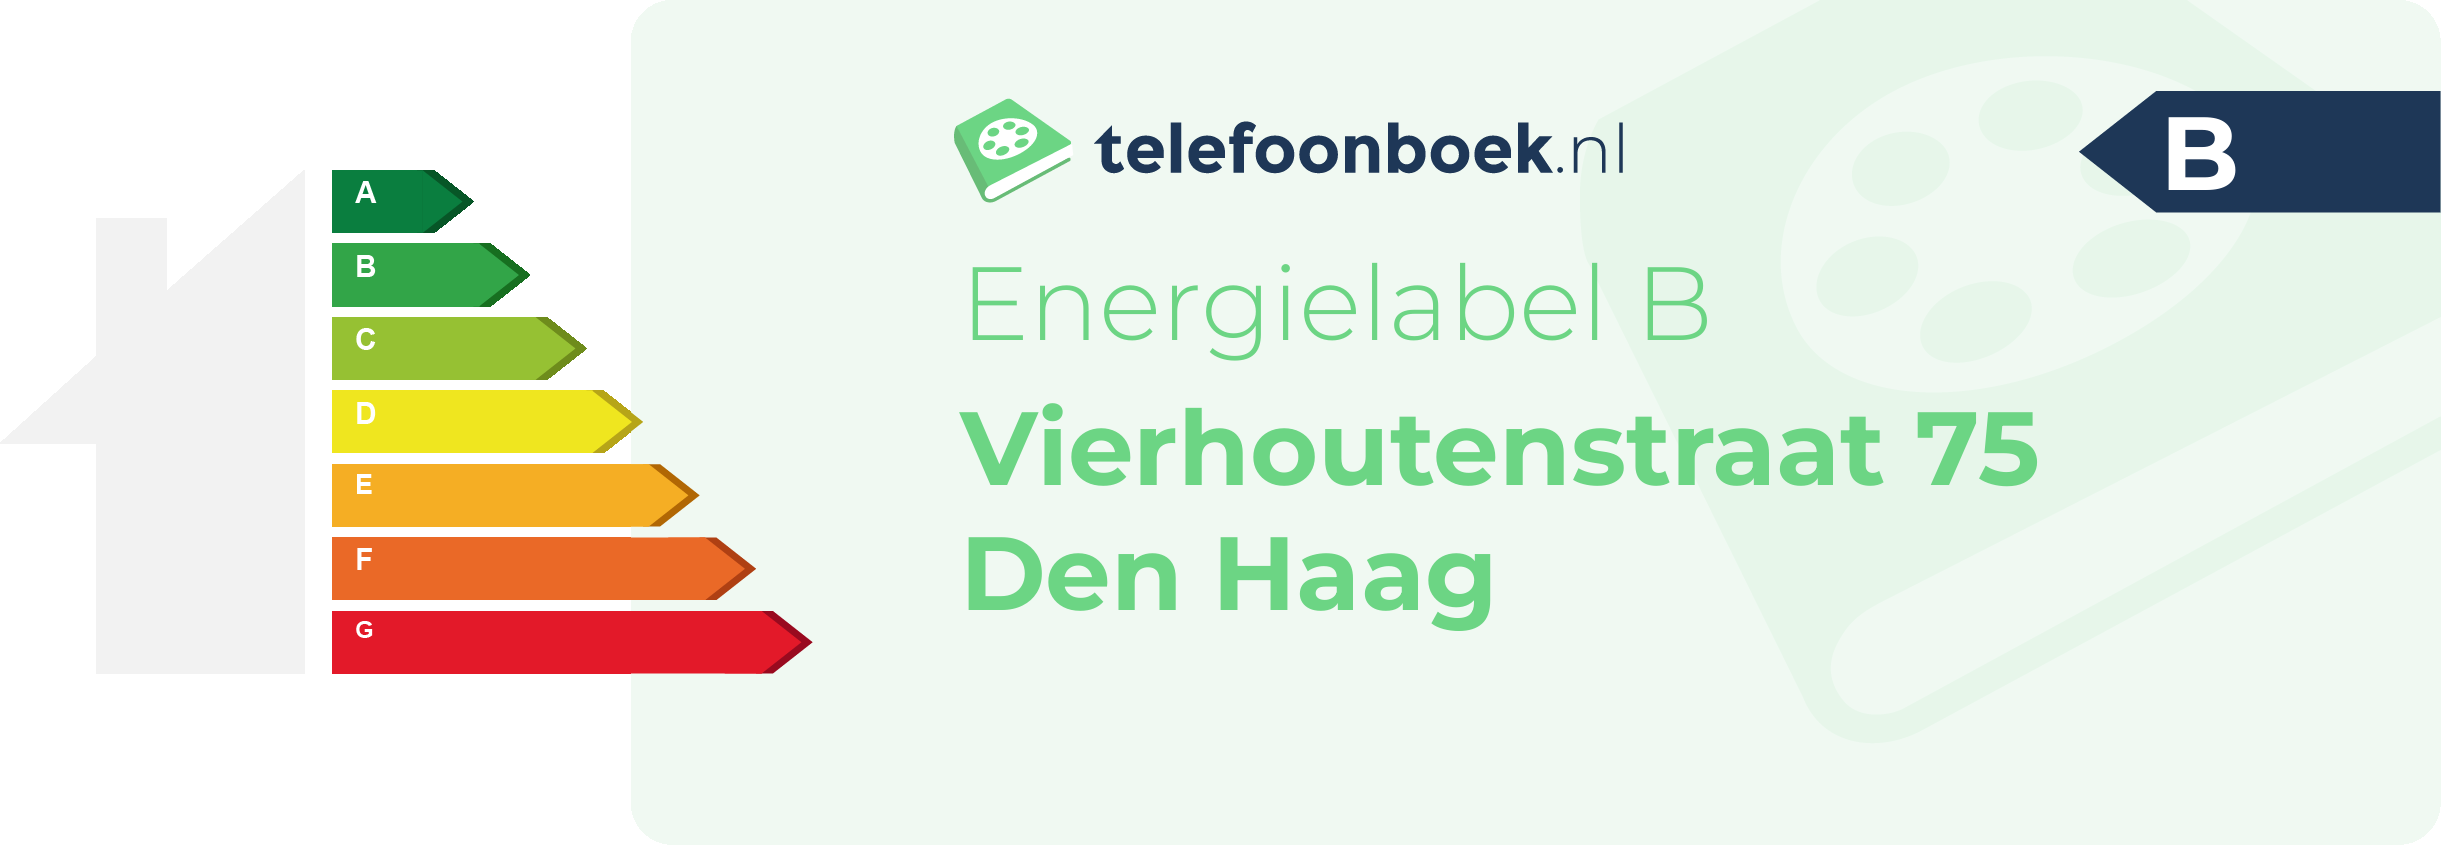 Energielabel Vierhoutenstraat 75 Den Haag